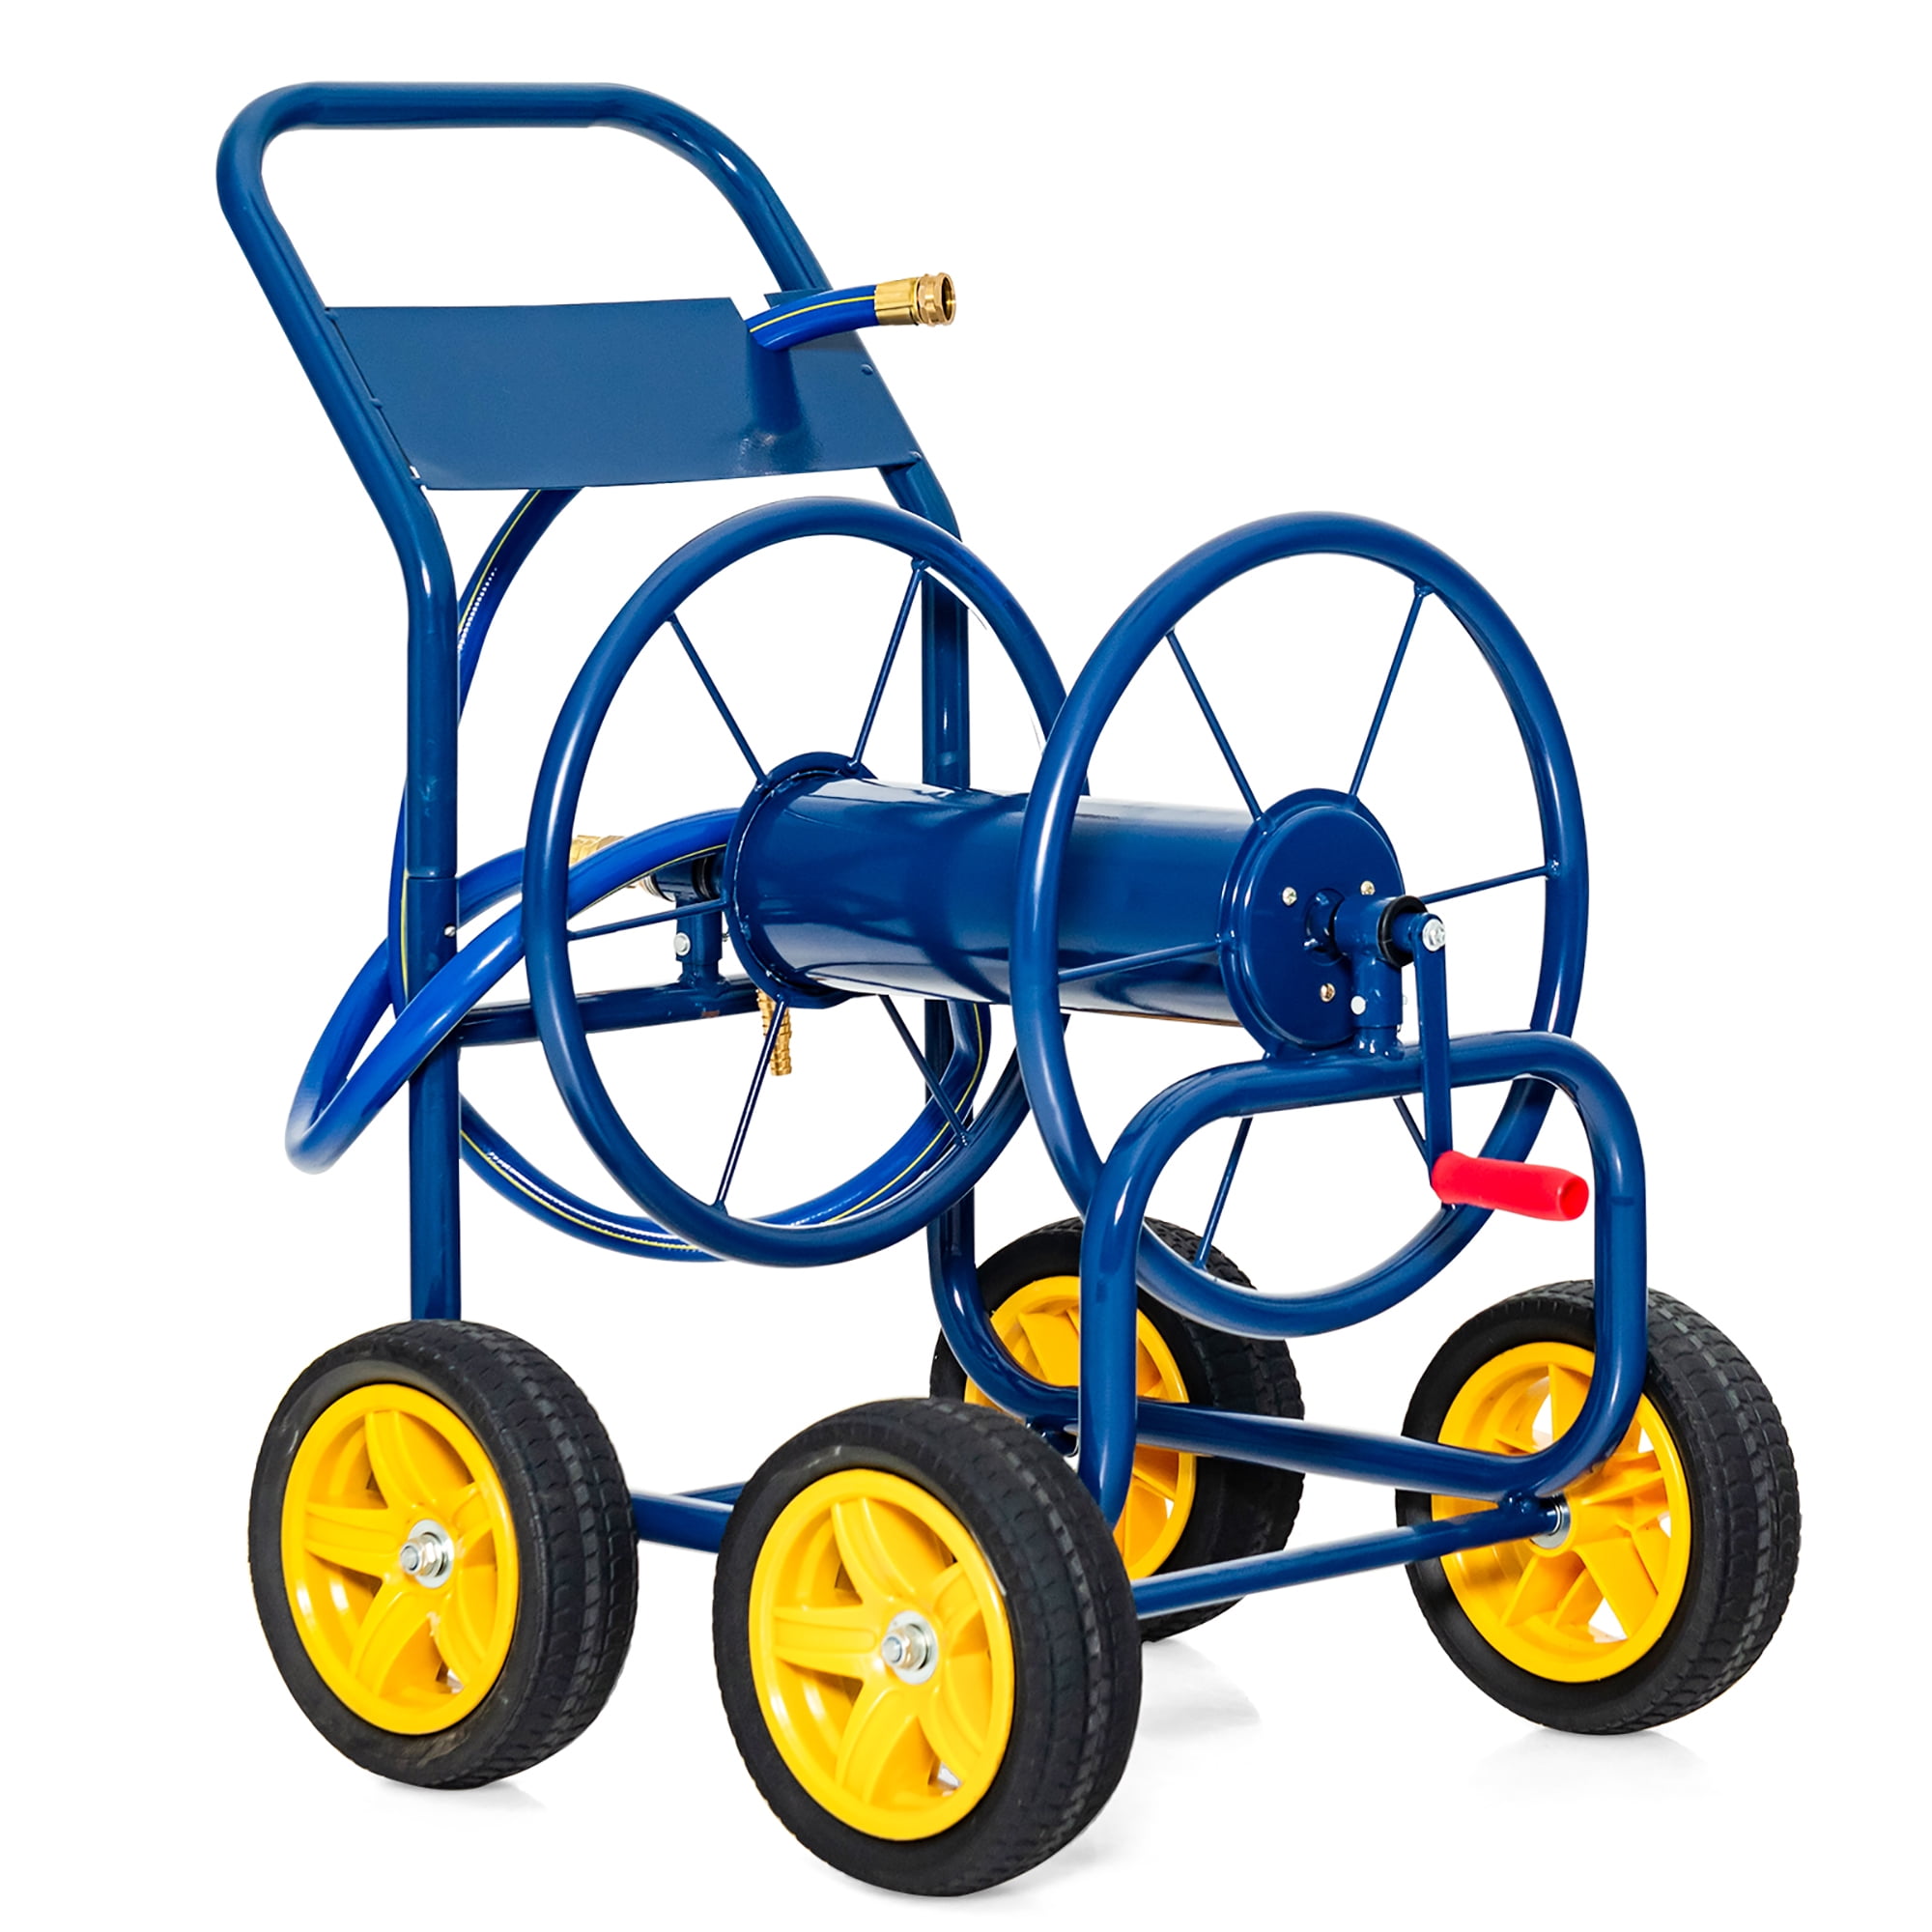 Costway Garden Hose Reel Cart Holds 330ft of 3/4or 5/8 Hose 400ft of  1/2'' Hose Blue 